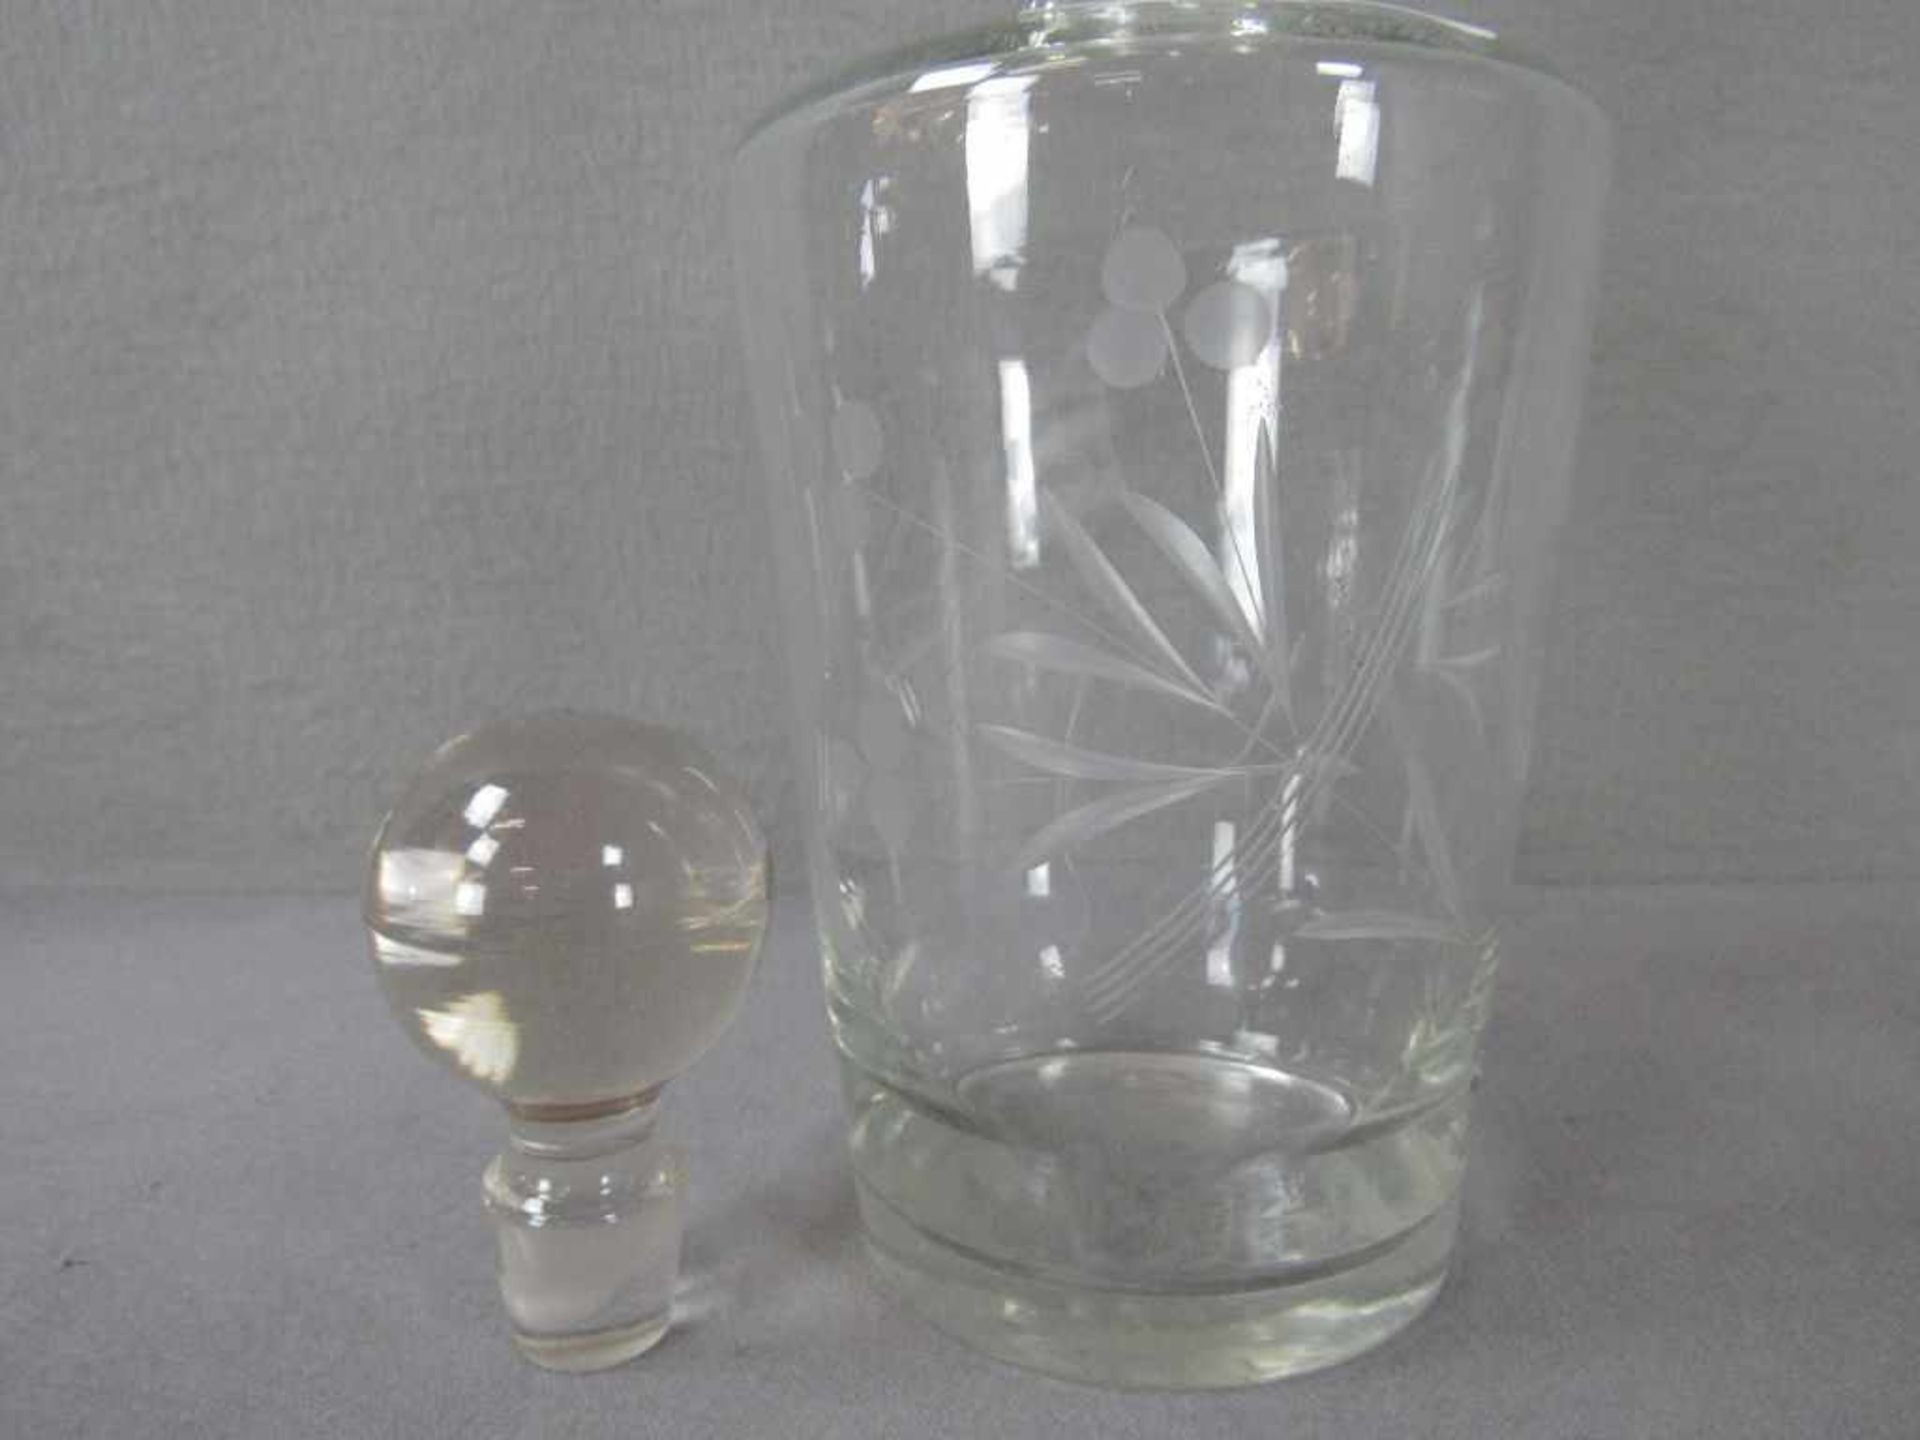 Kristallglas Karaffe 32cm hoch - Image 2 of 2